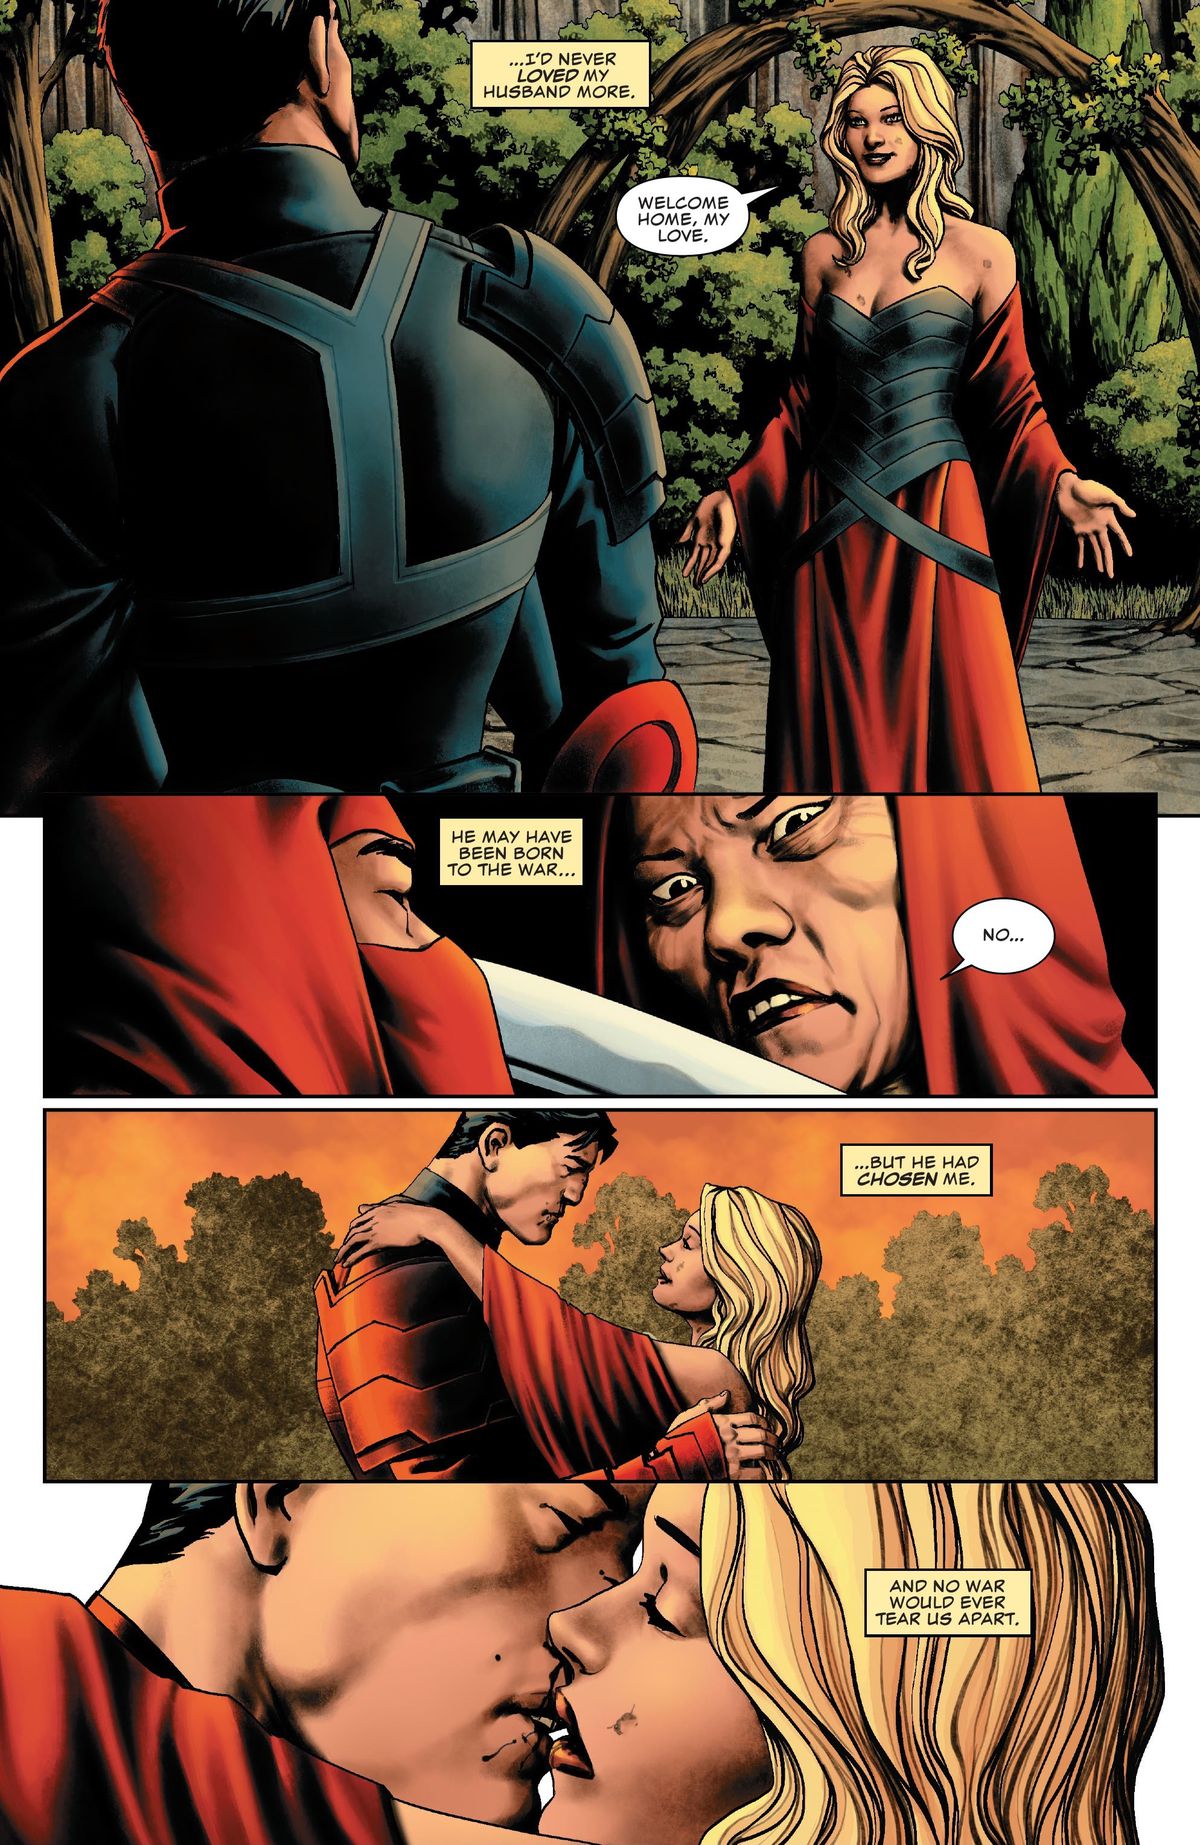 Maria, che indossa un abito da cattivo, abbraccia suo marito, riflettendo nella narrazione su come la sua affinità per l'omicidio sia stata resa amabile quando ha dimostrato di essere disposto a rinunciare per lei, in Punisher # 9 (2023).